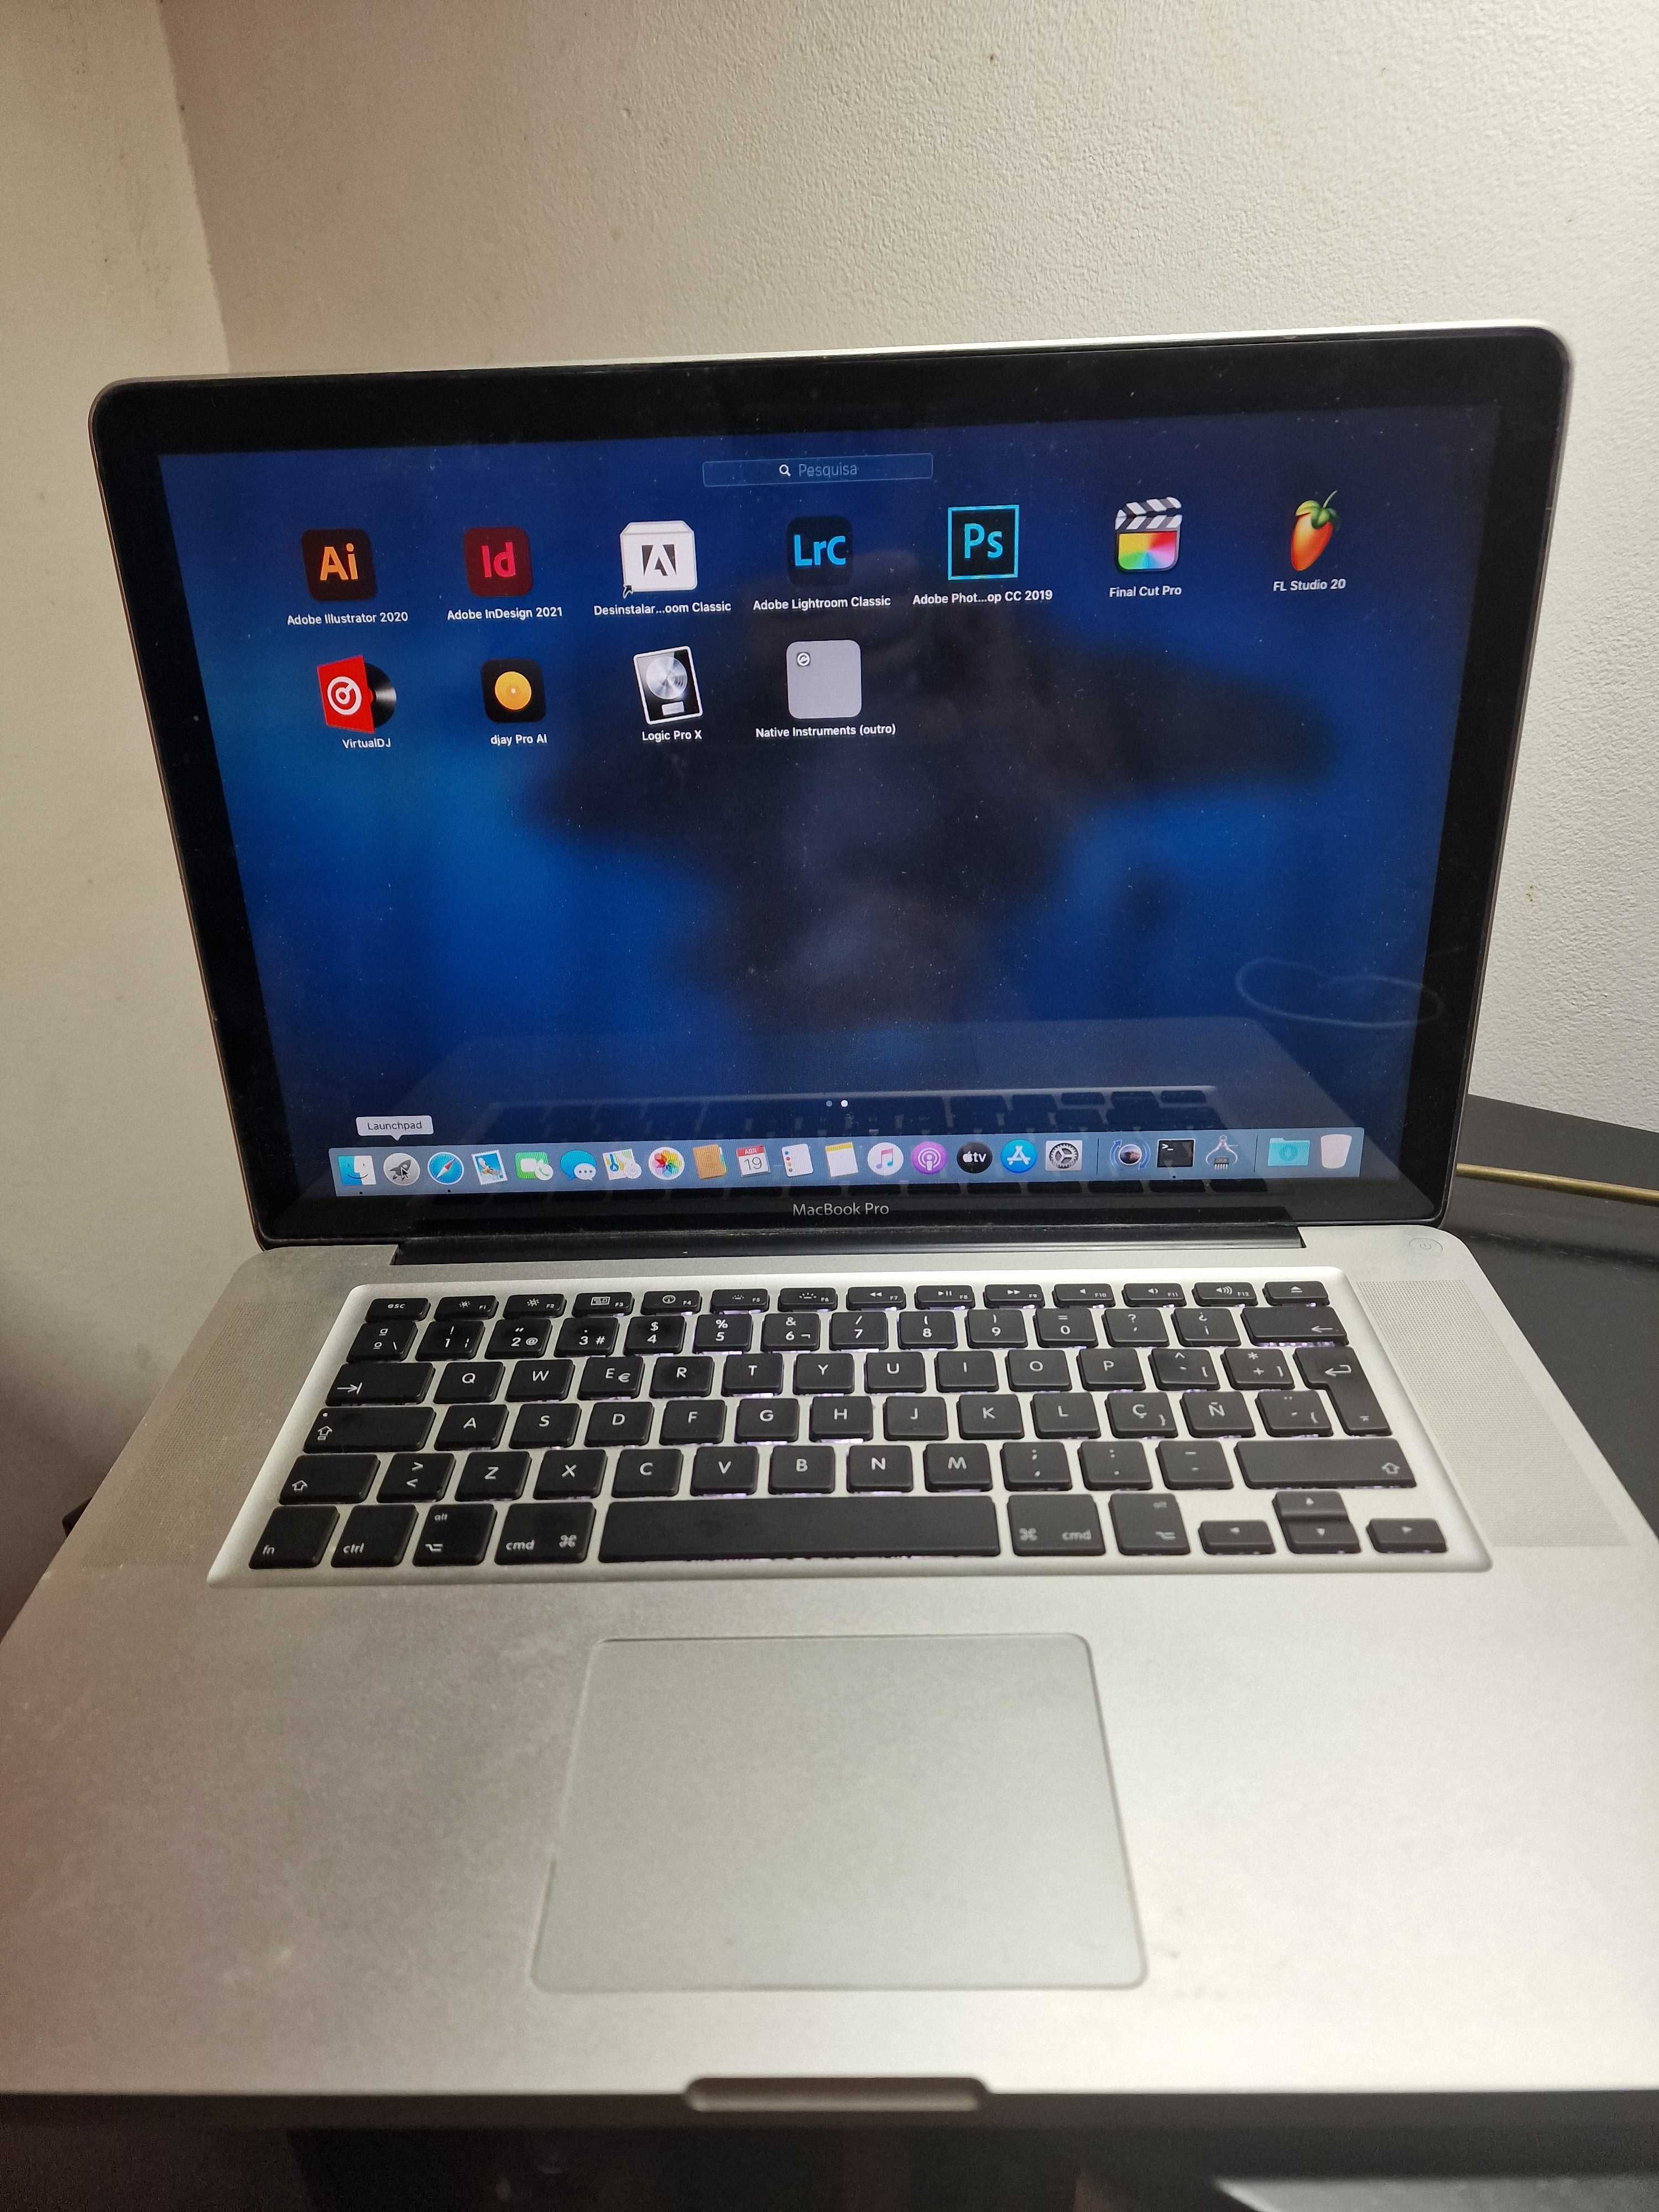 MacBook Pro 15 polegadas com vários programas